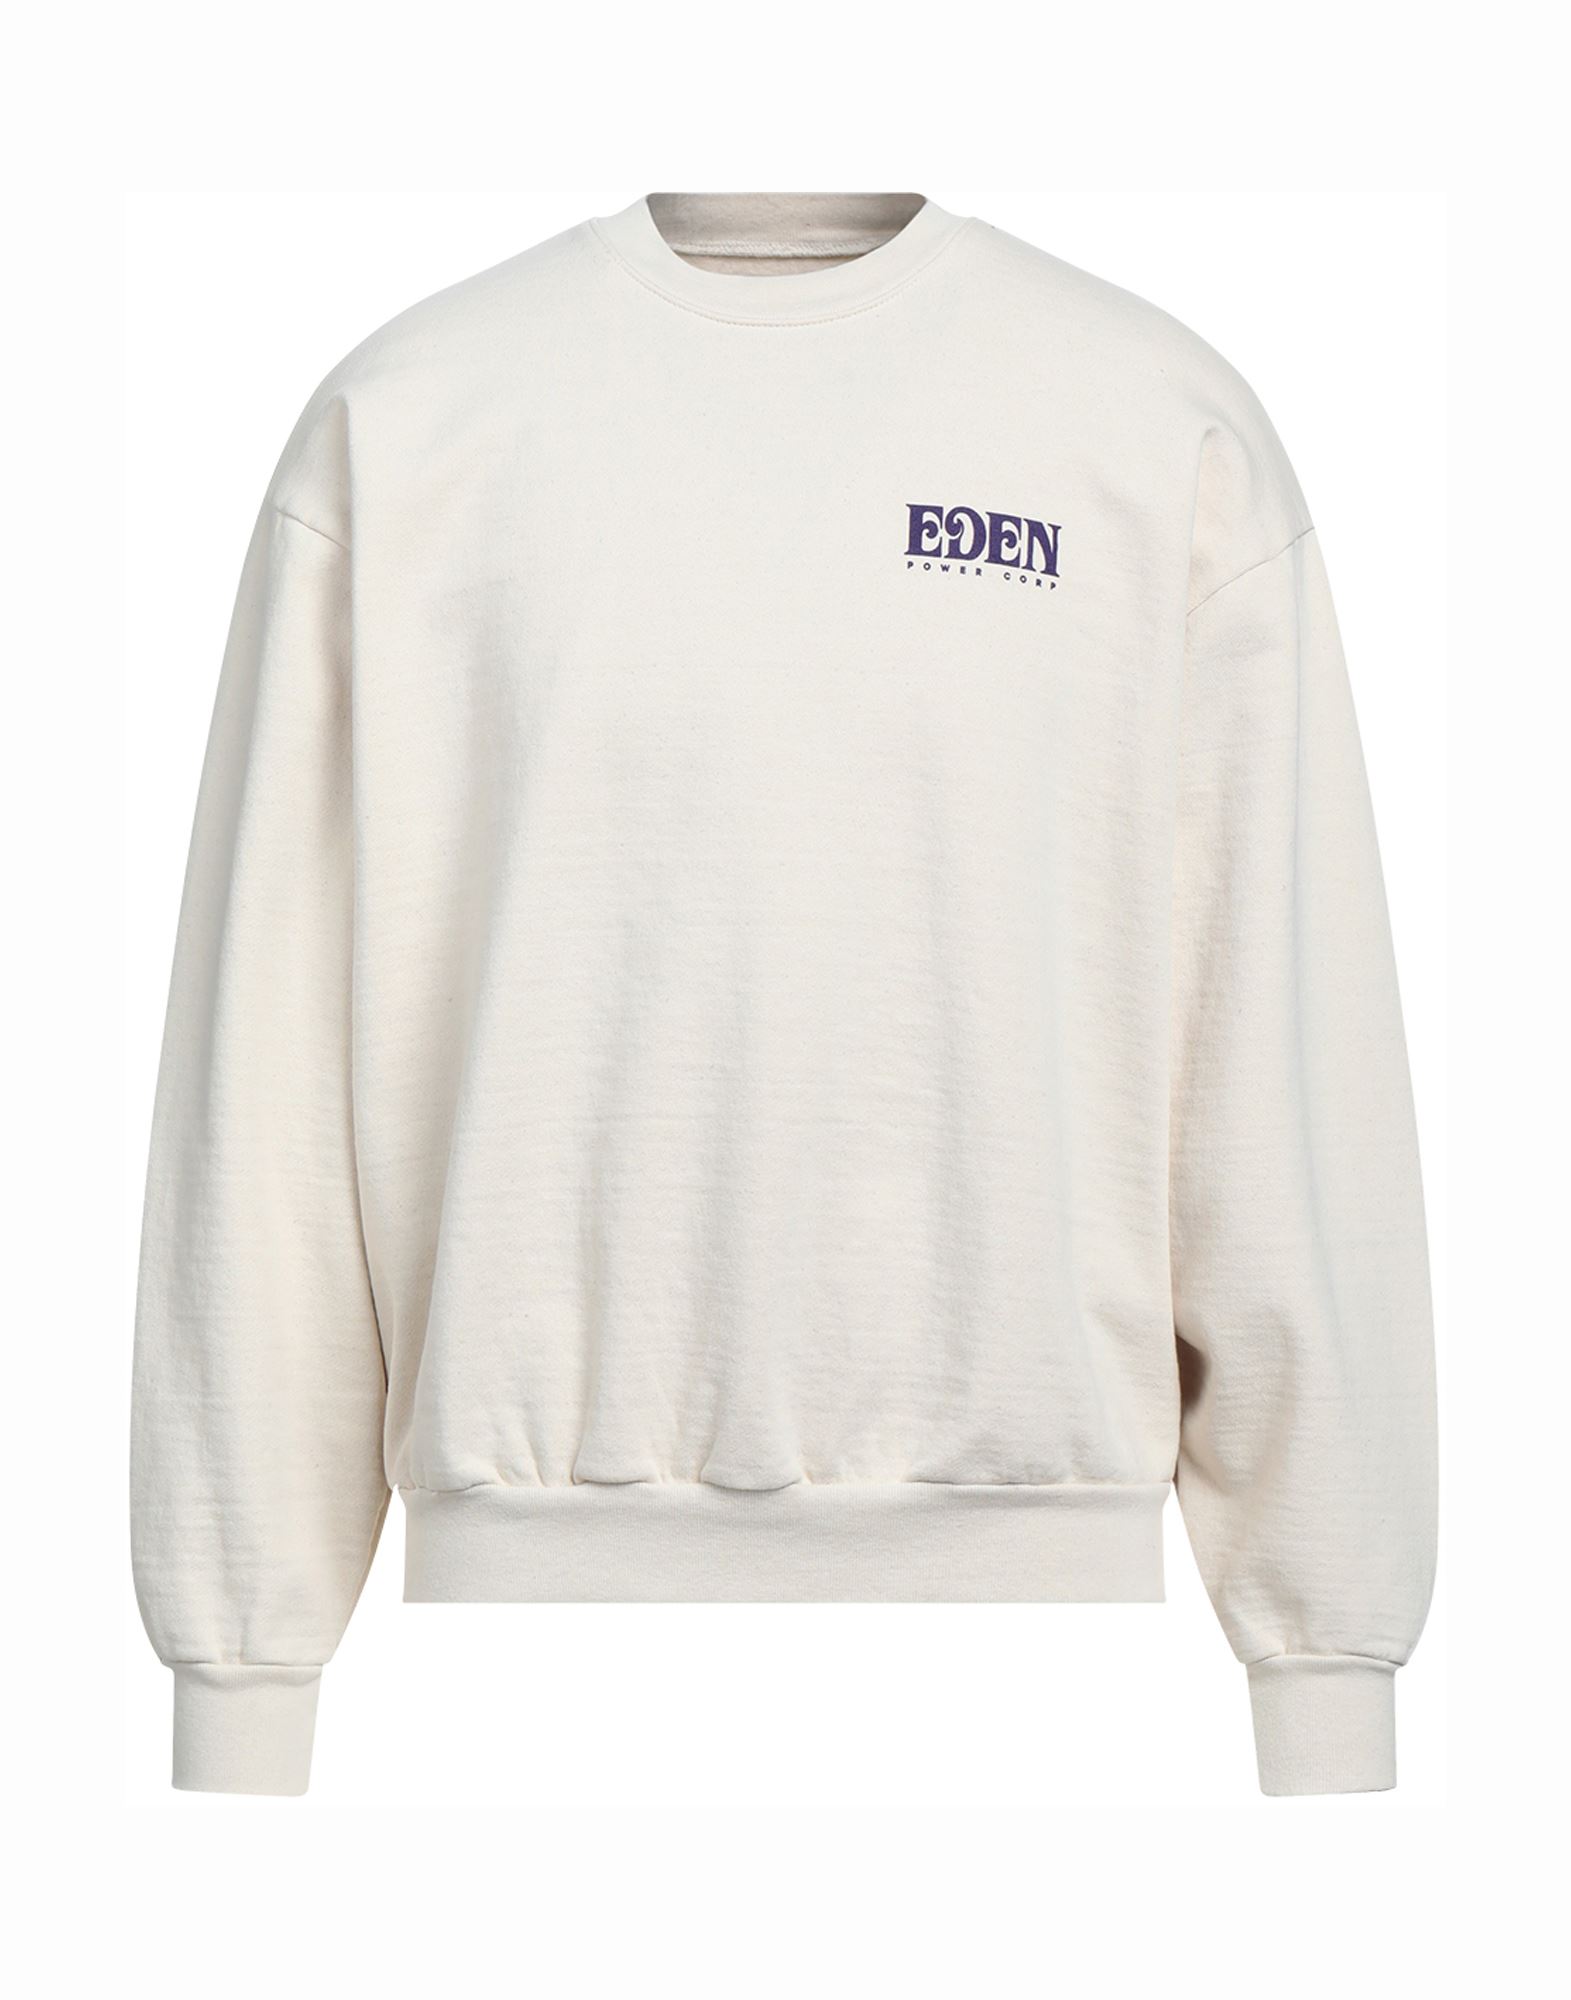 Eden Sweatshirts In White